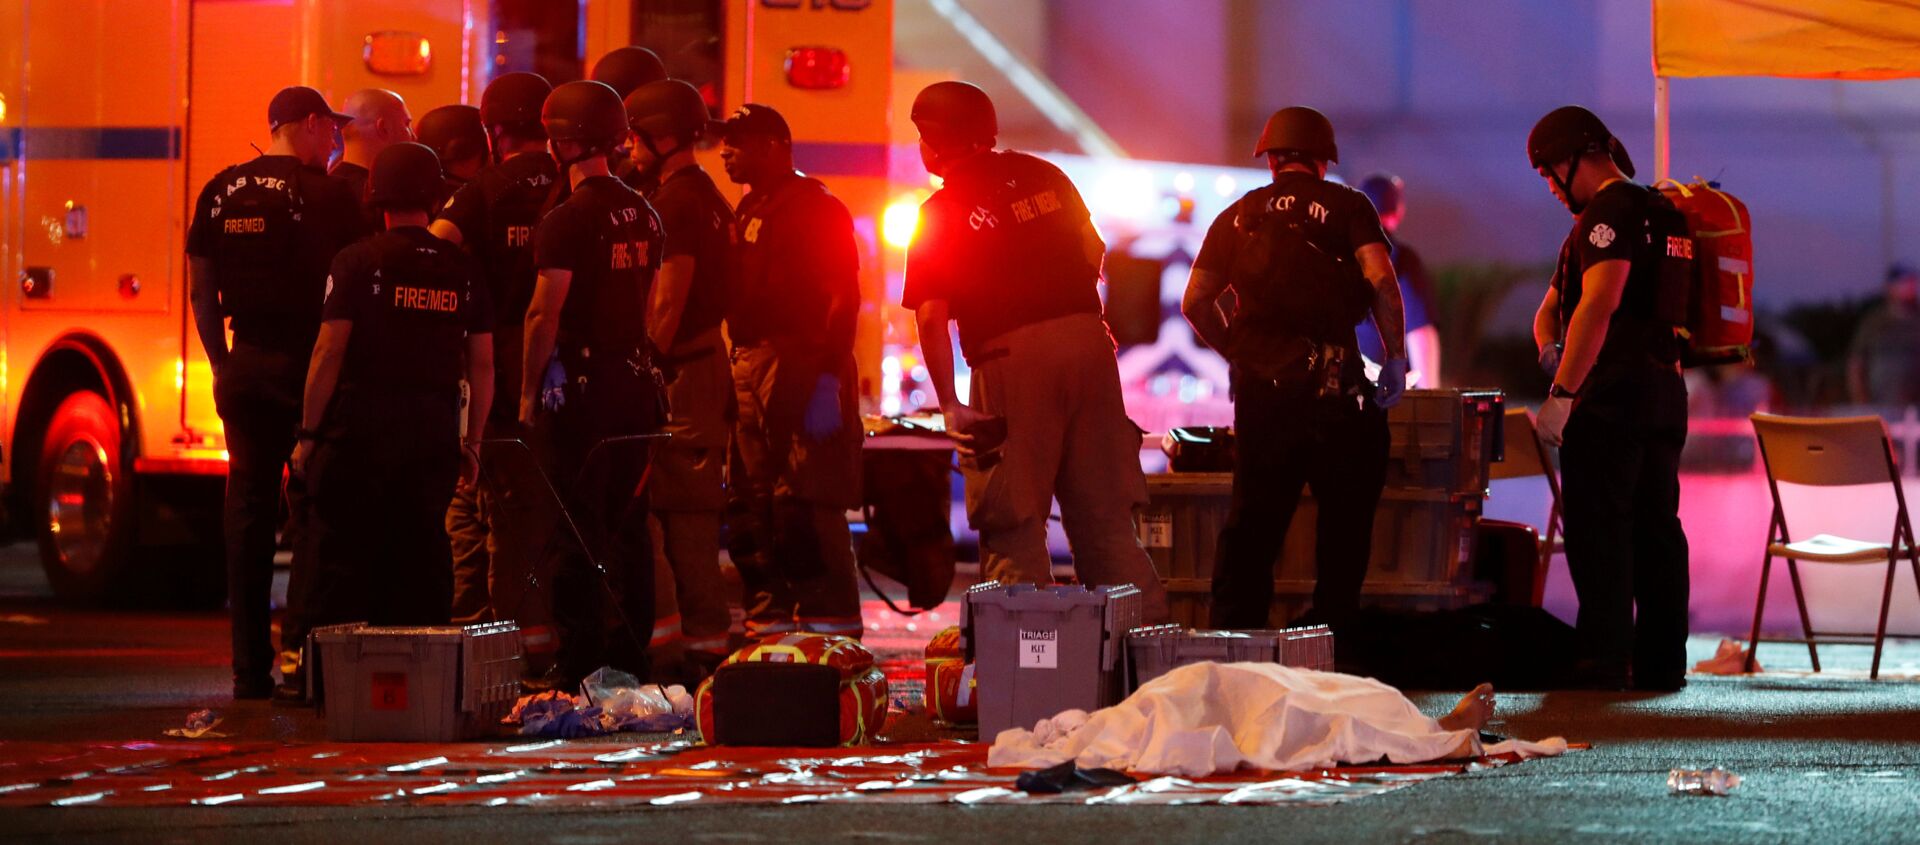 Policija pored tela jednog od nastradalih u pucnjavi u Las Vegasu - Sputnik Srbija, 1920, 02.10.2017